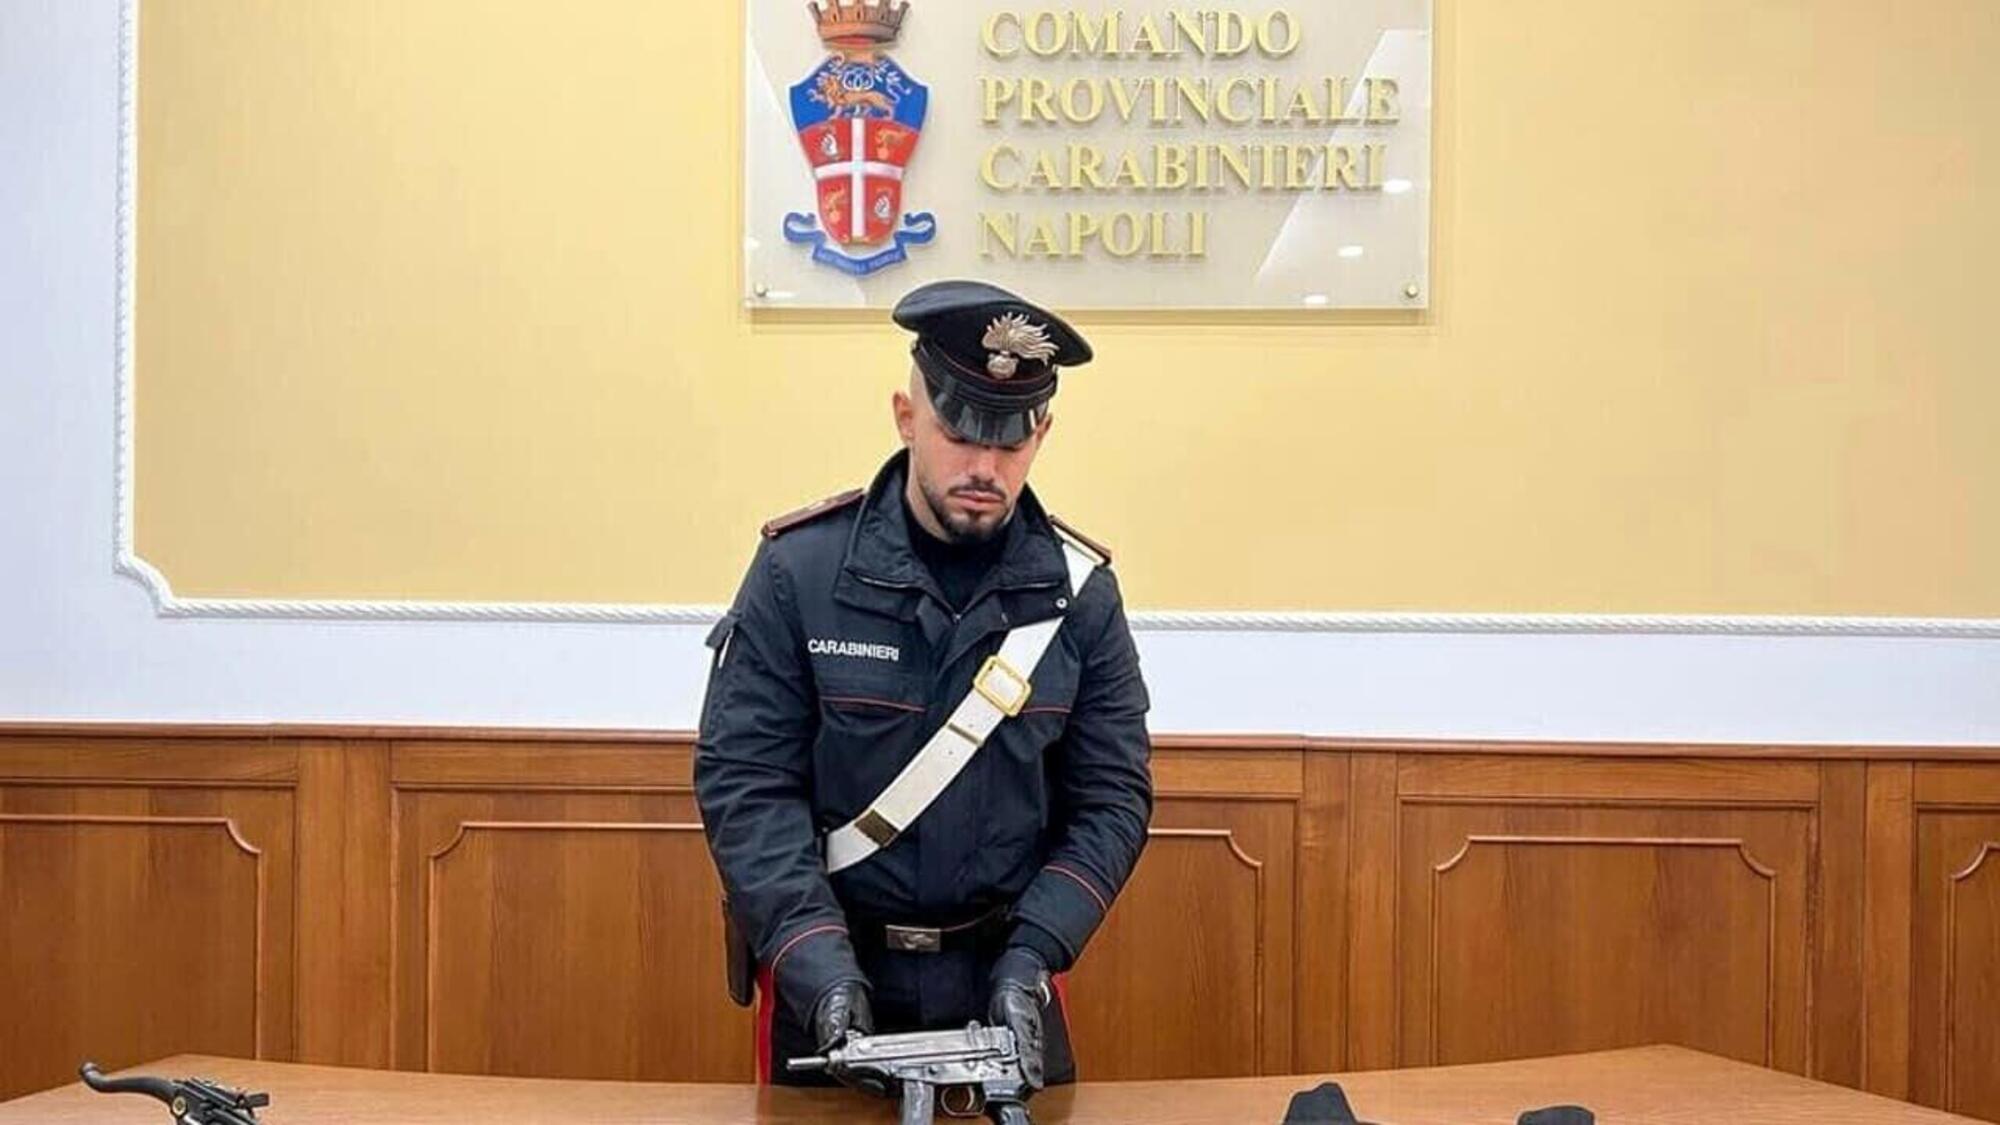 La mitragliatrice Skorpion calibro 7,65 sequestrata dai carabinieri